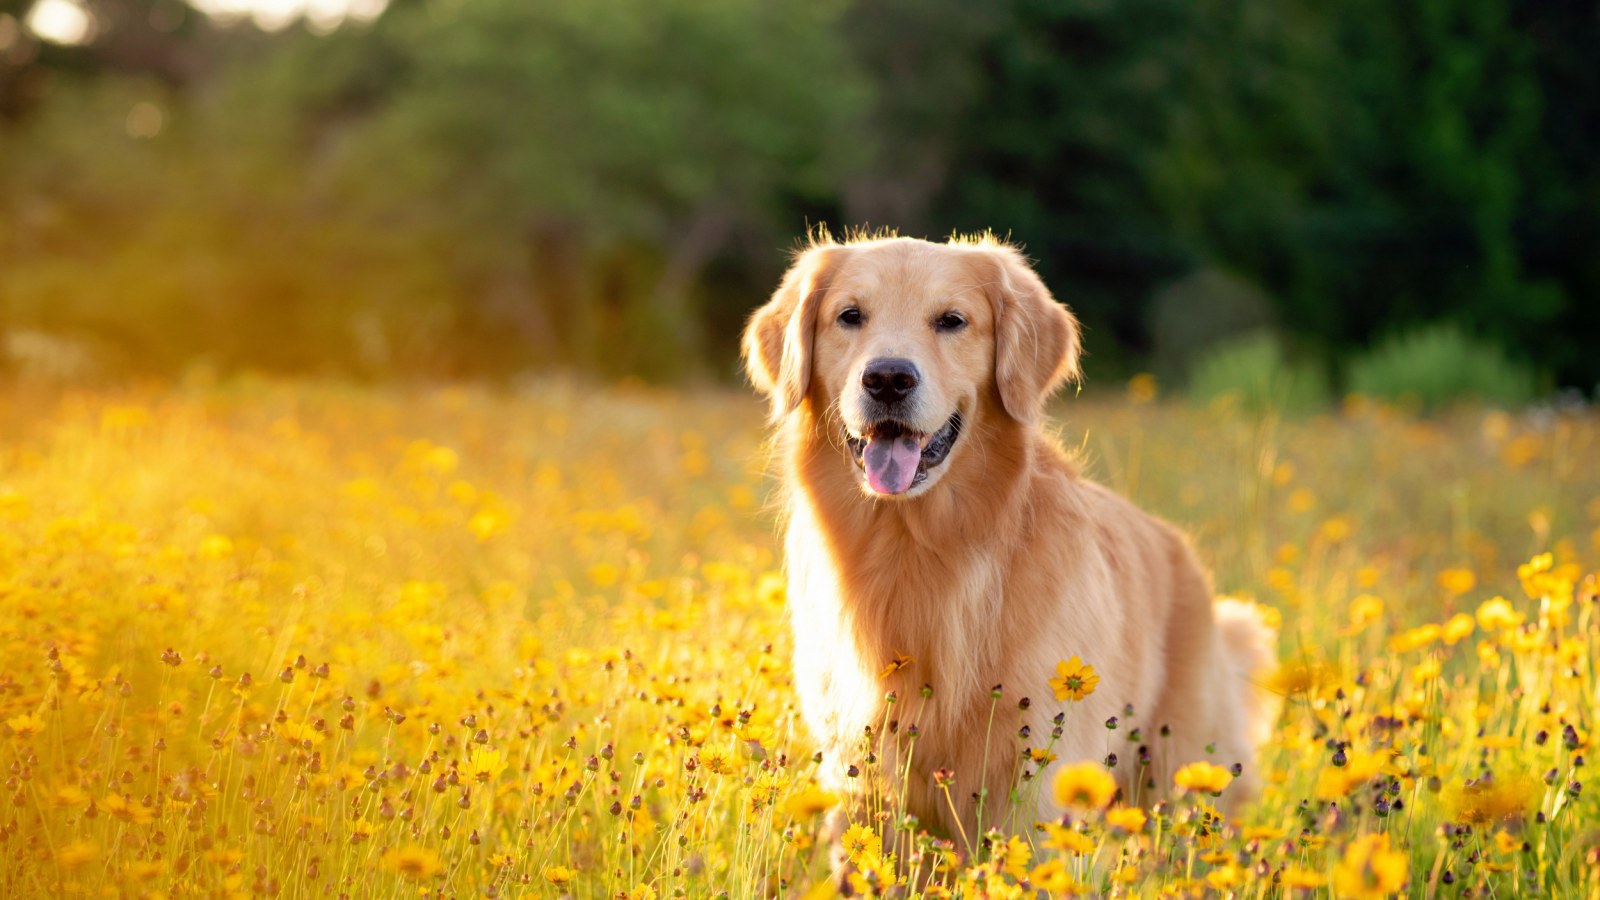 một chú chó golden retriever màu vàng đứng tươi cười giữa đồng hoa vàng toả nắng